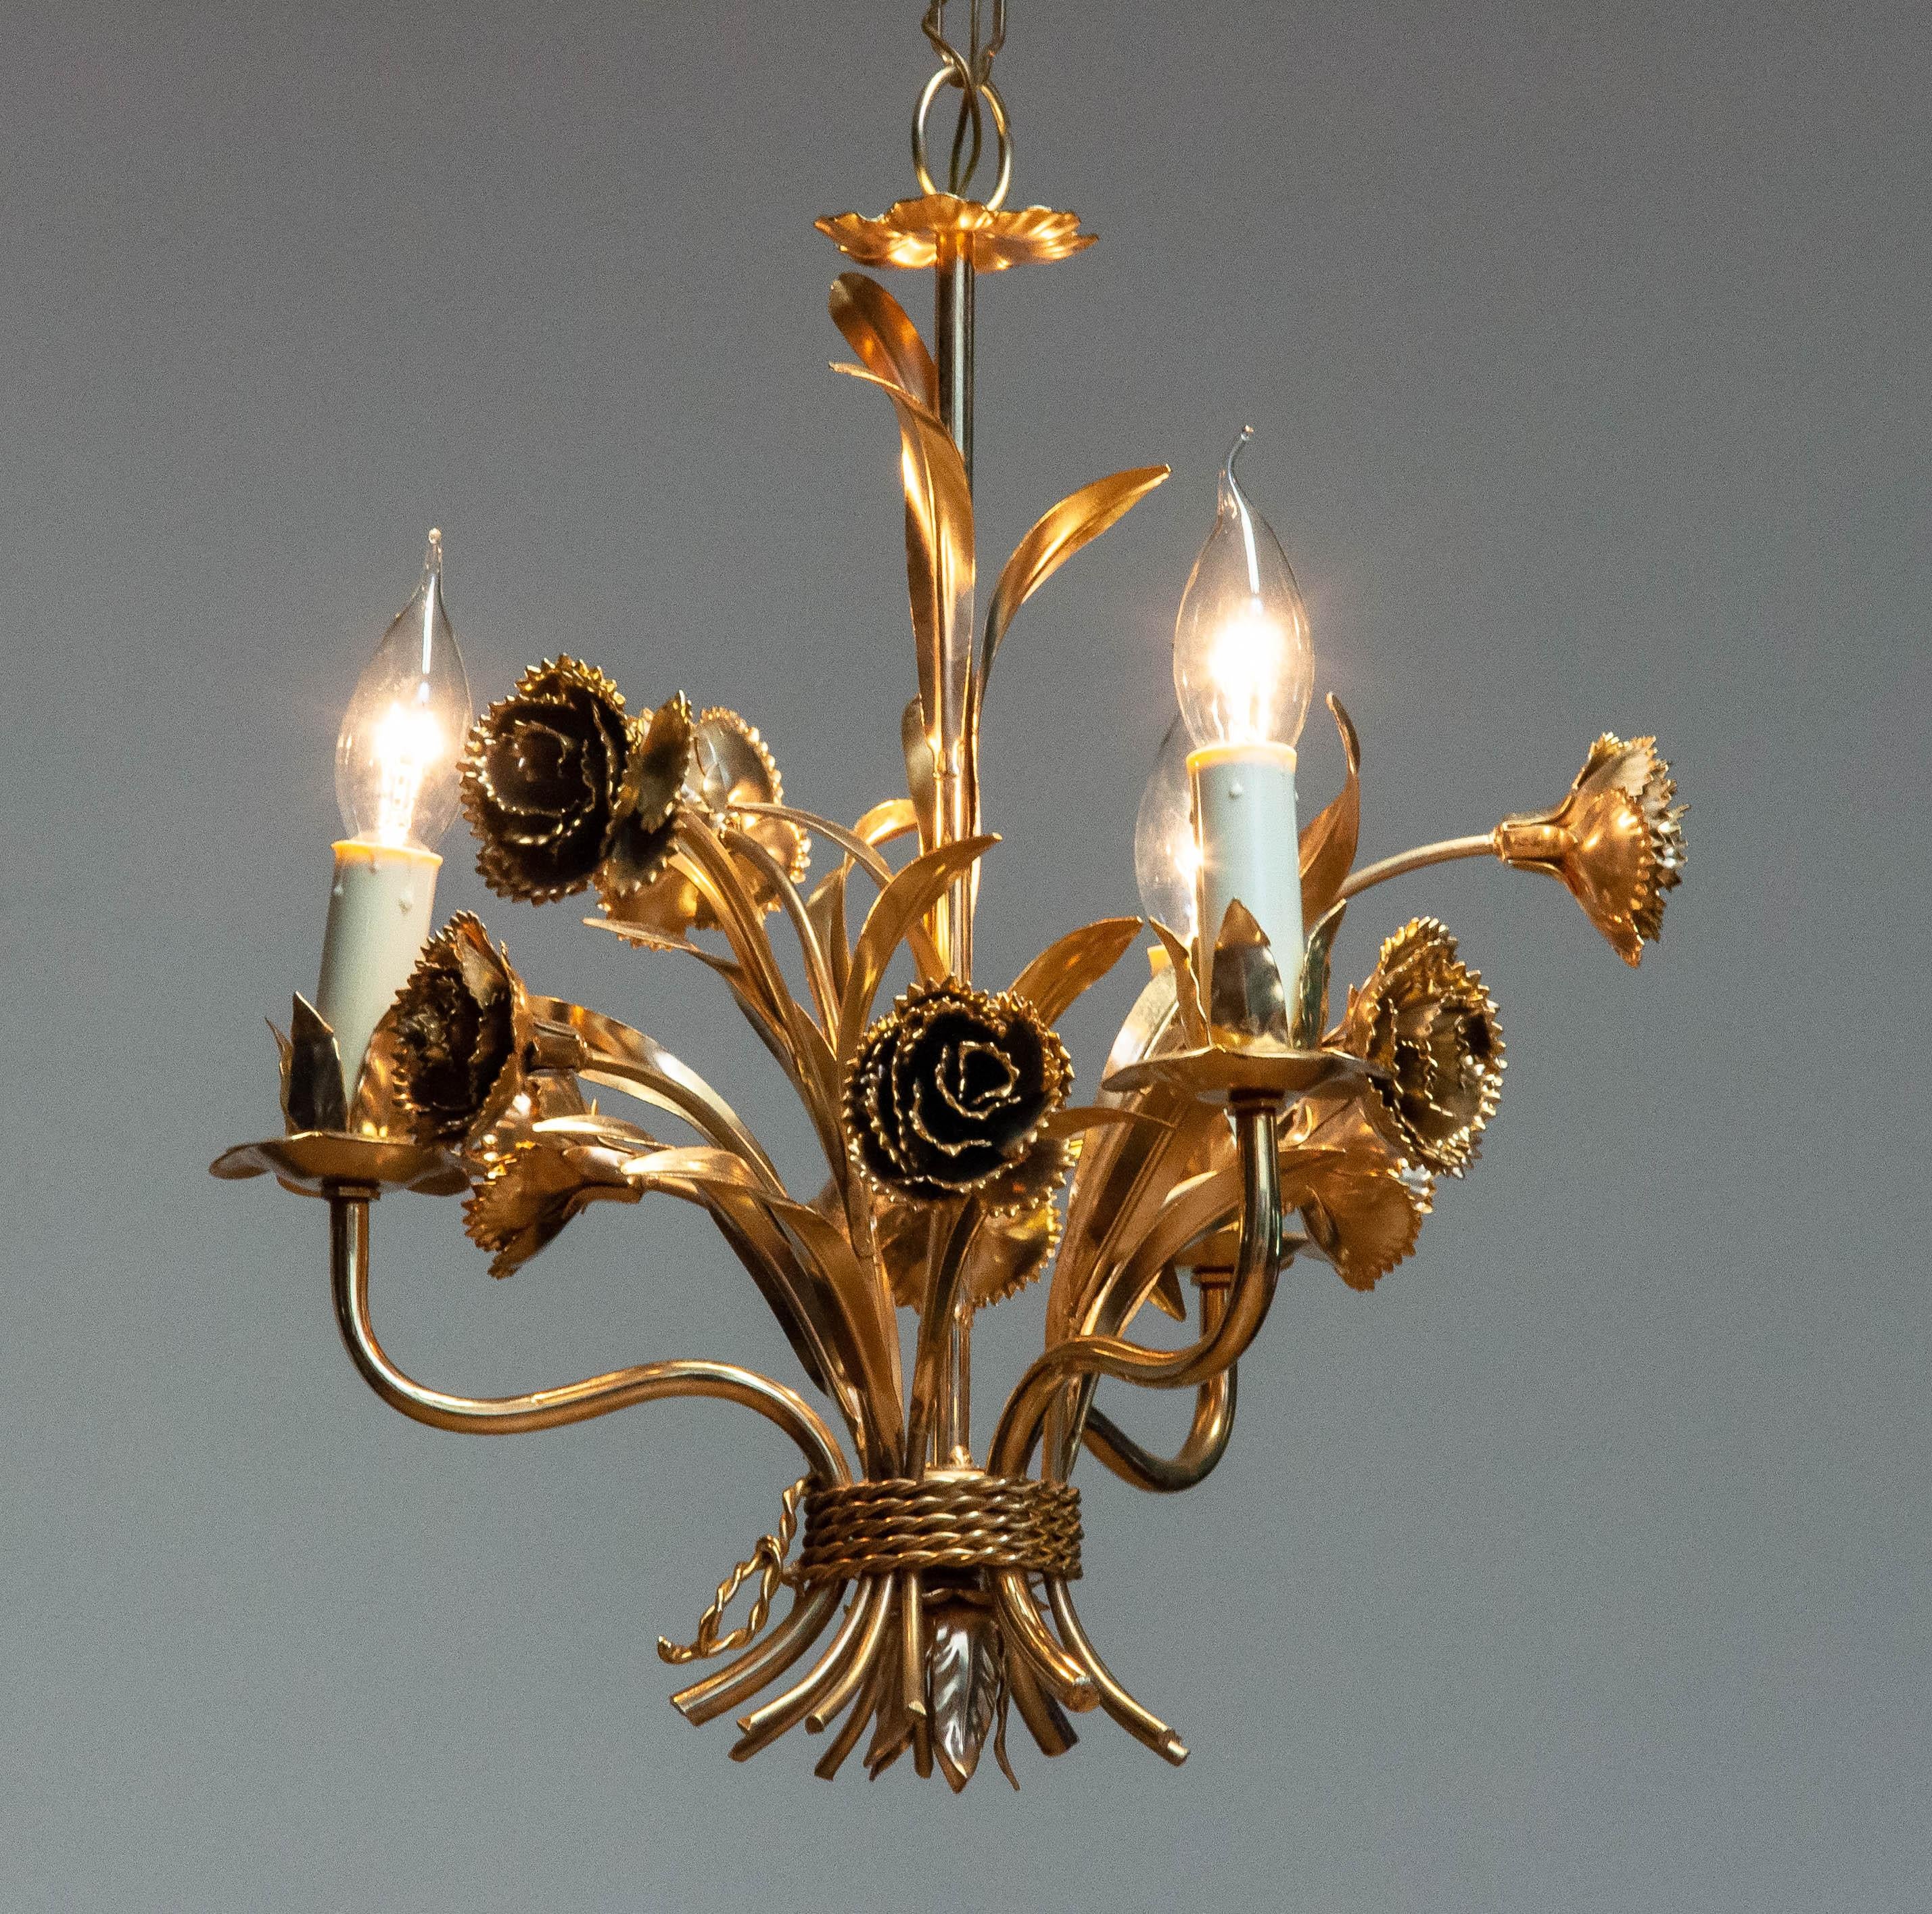 Magnifique lustre à décor floral dans le célèbre style de Coco Chanel réalisé en Allemagne dans les années 1960 par Hans Kogl.
Le lustre est doré.
Techniquement à 100% et dans l'ensemble en très bon état. Trois raccords à vis E14.
Longueur de la